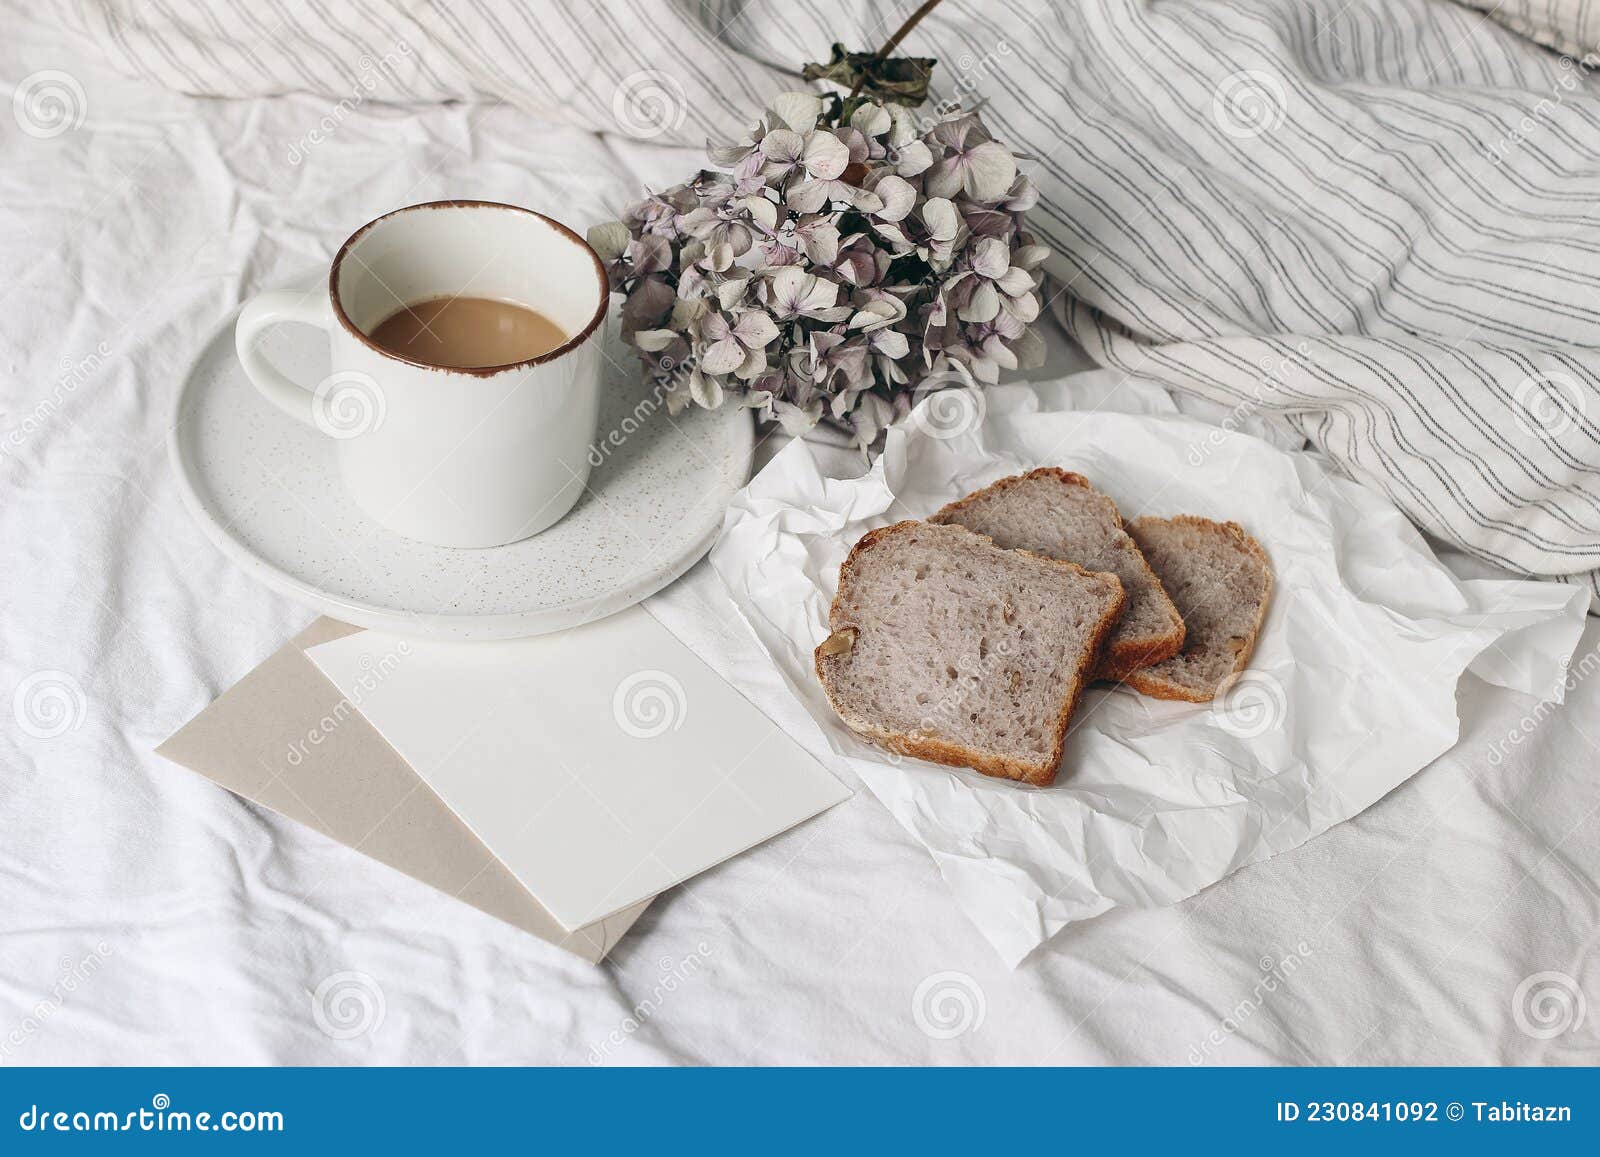 Desayuno Femenino Con Escenografía De La Vida En La Composición De La Cama.  Taza De Café Seca Hidrangea Flores Y Pan De Nueces Sob Foto de archivo -  Imagen de alimento, desayuno: